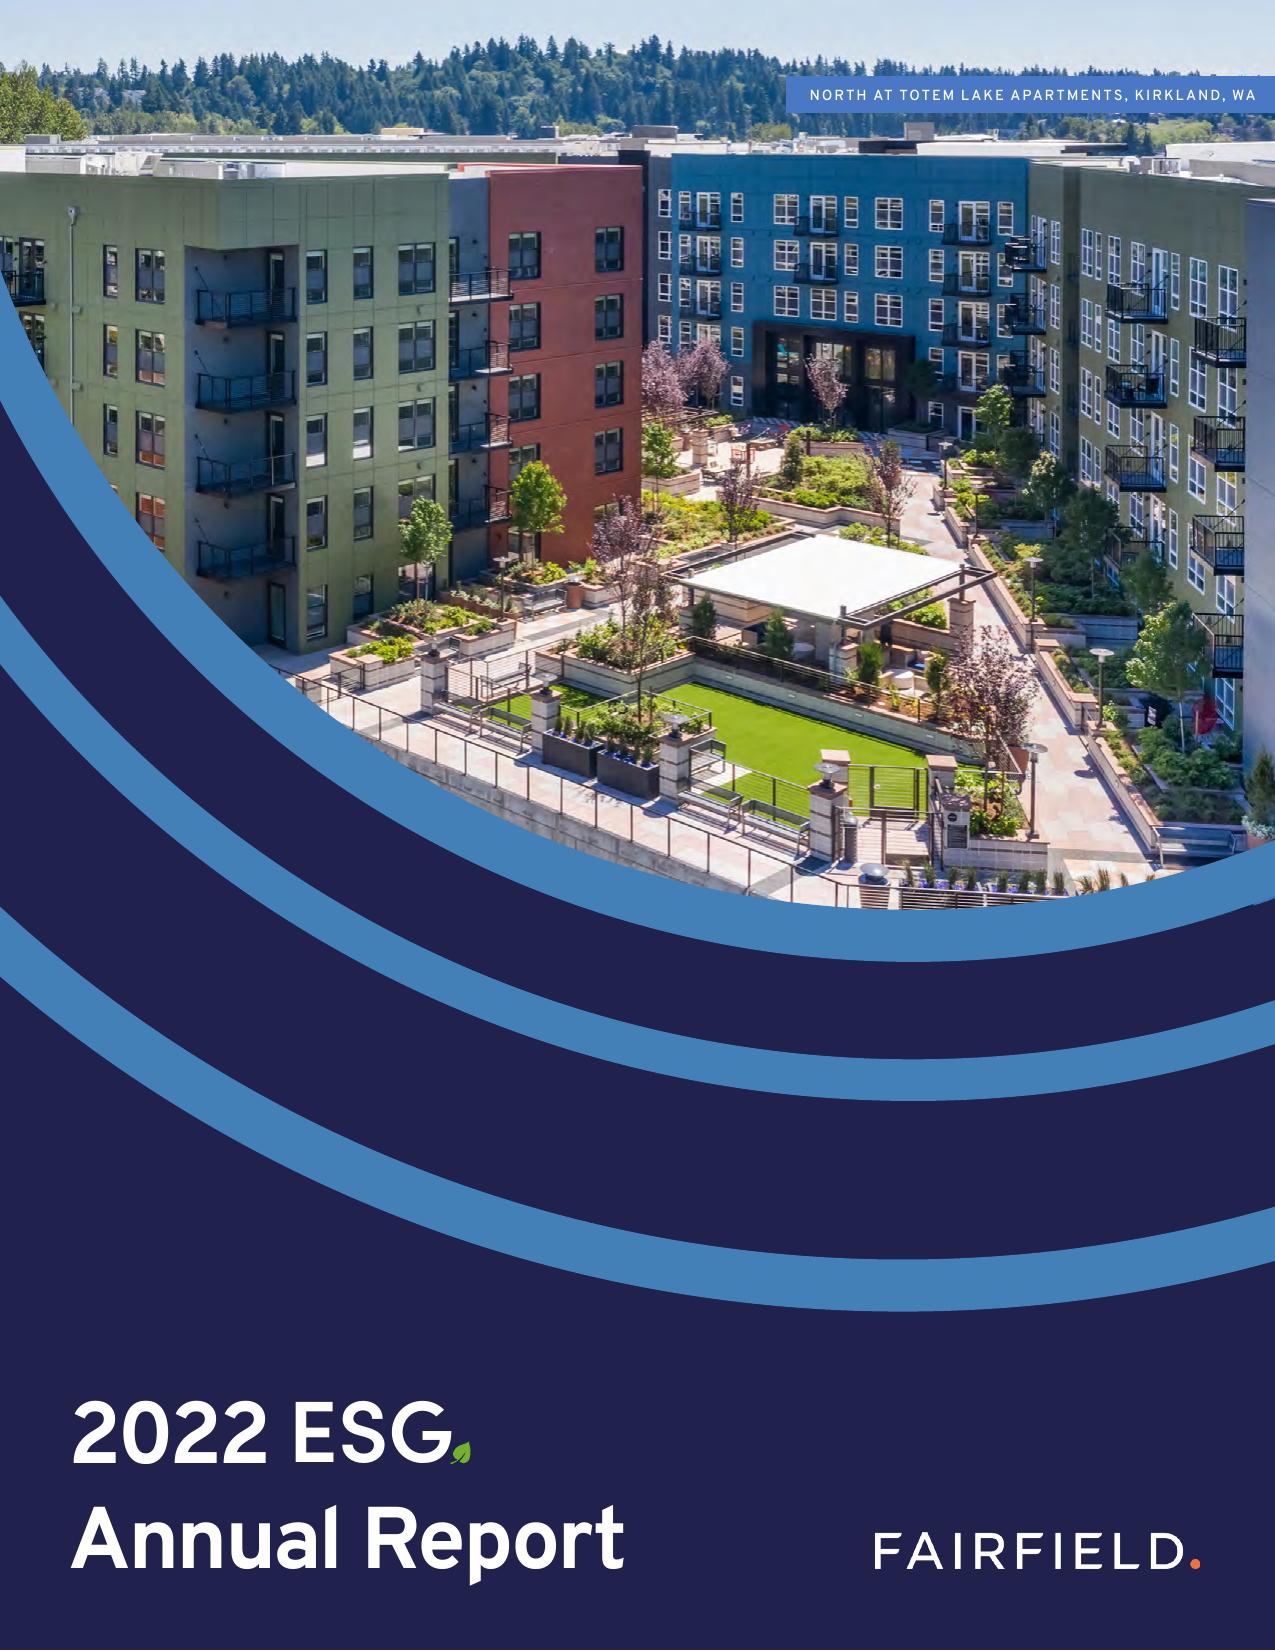 ALMEGACO 2022 Annual Report